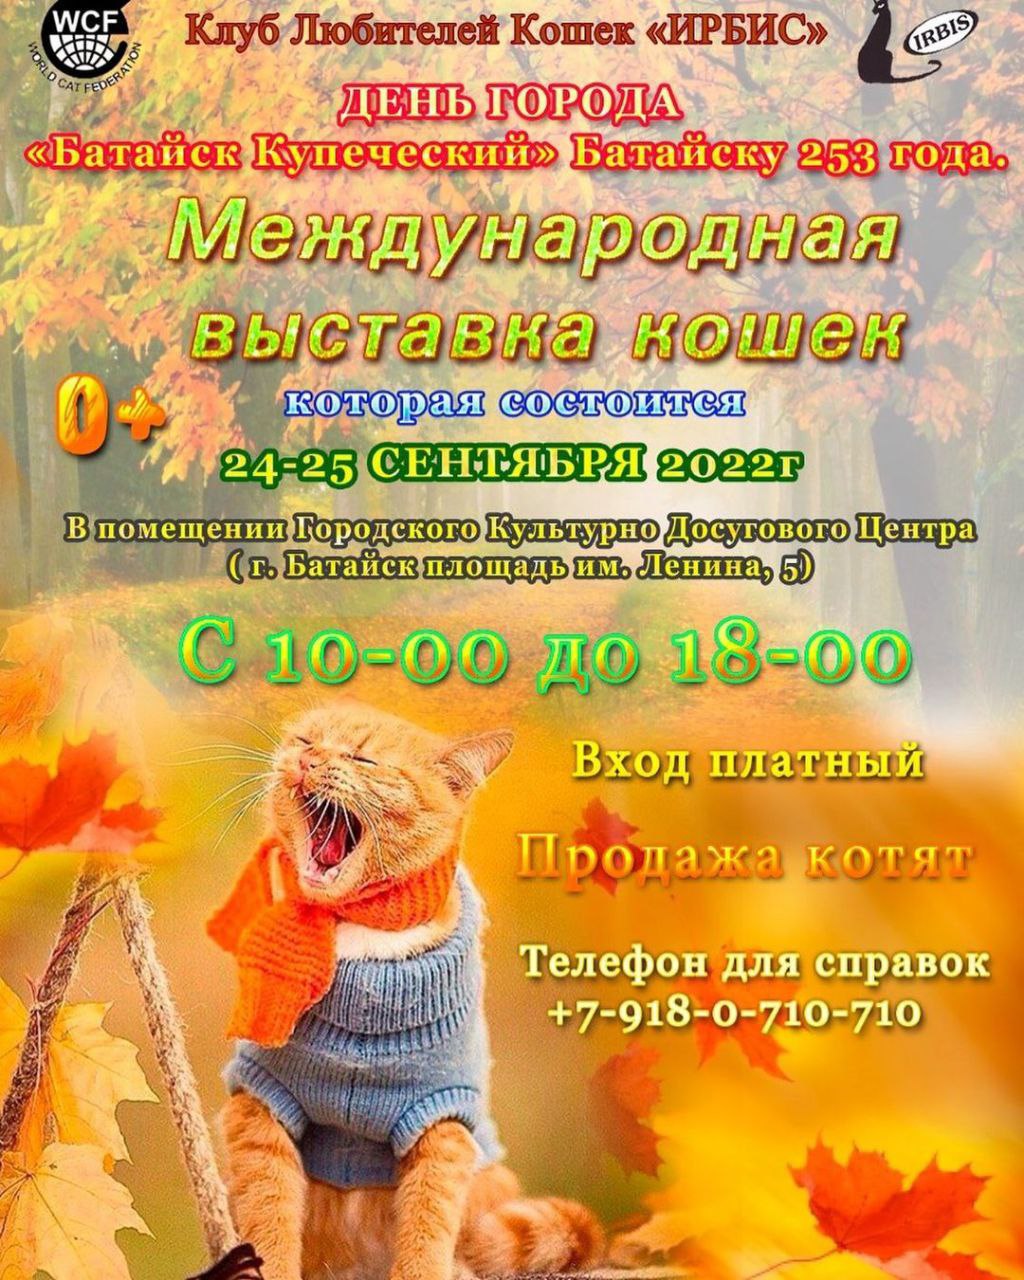 Международная выставка кошек (Батайск)